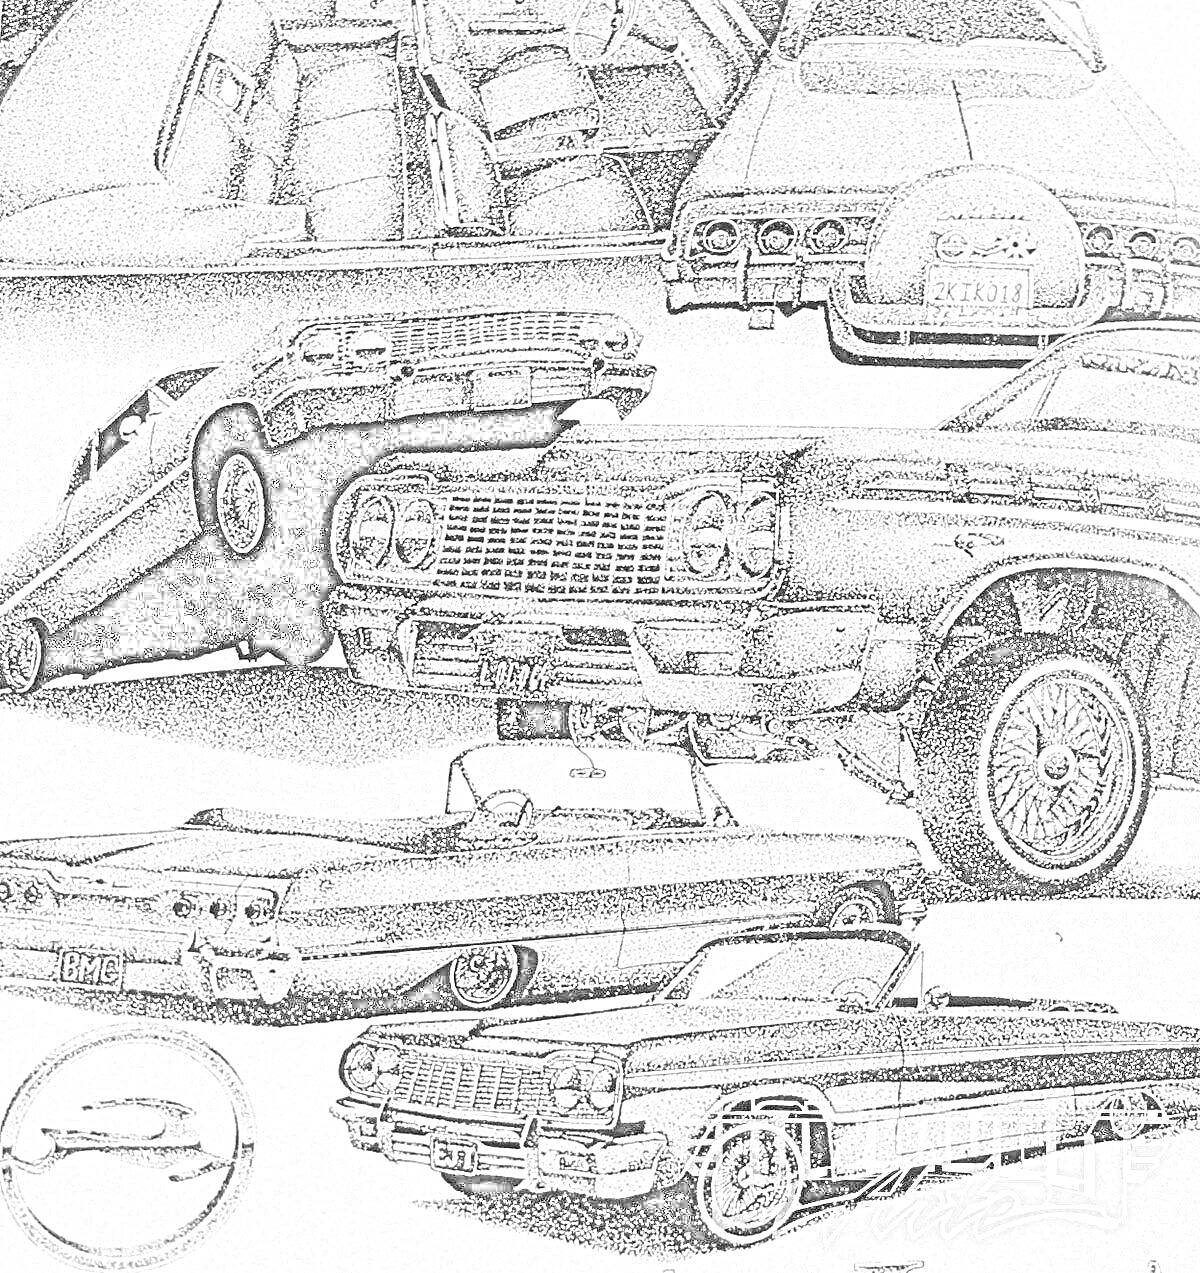 Раскраска Лоурайдеры с различными элементами - внутренность салона, задняя часть машины, лоурайдер на гидравлике, передняя часть с решеткой радиатора, колеса, открытый капот, общий вид автомобилей